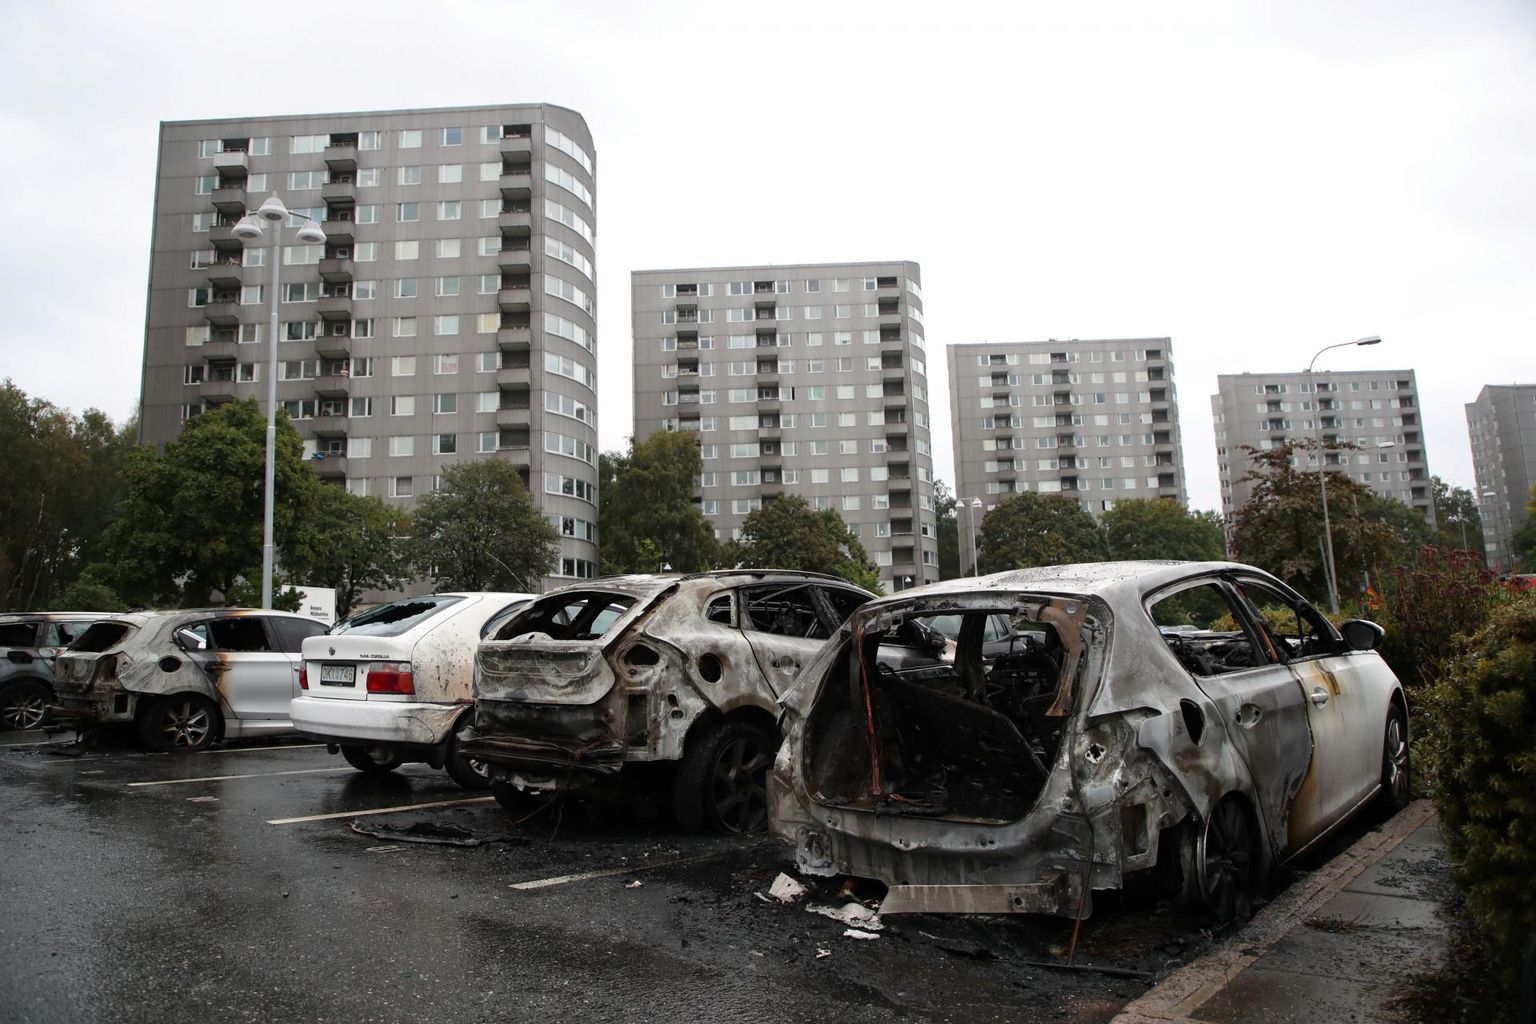 Põlenud sõiduautod Göteborgi Frölunda linnaosas. Ööl vastu teisipäeva toimunud koordineeritud süütamislaines hävis üle saja sõiduki mitmes Rootsi linnas.